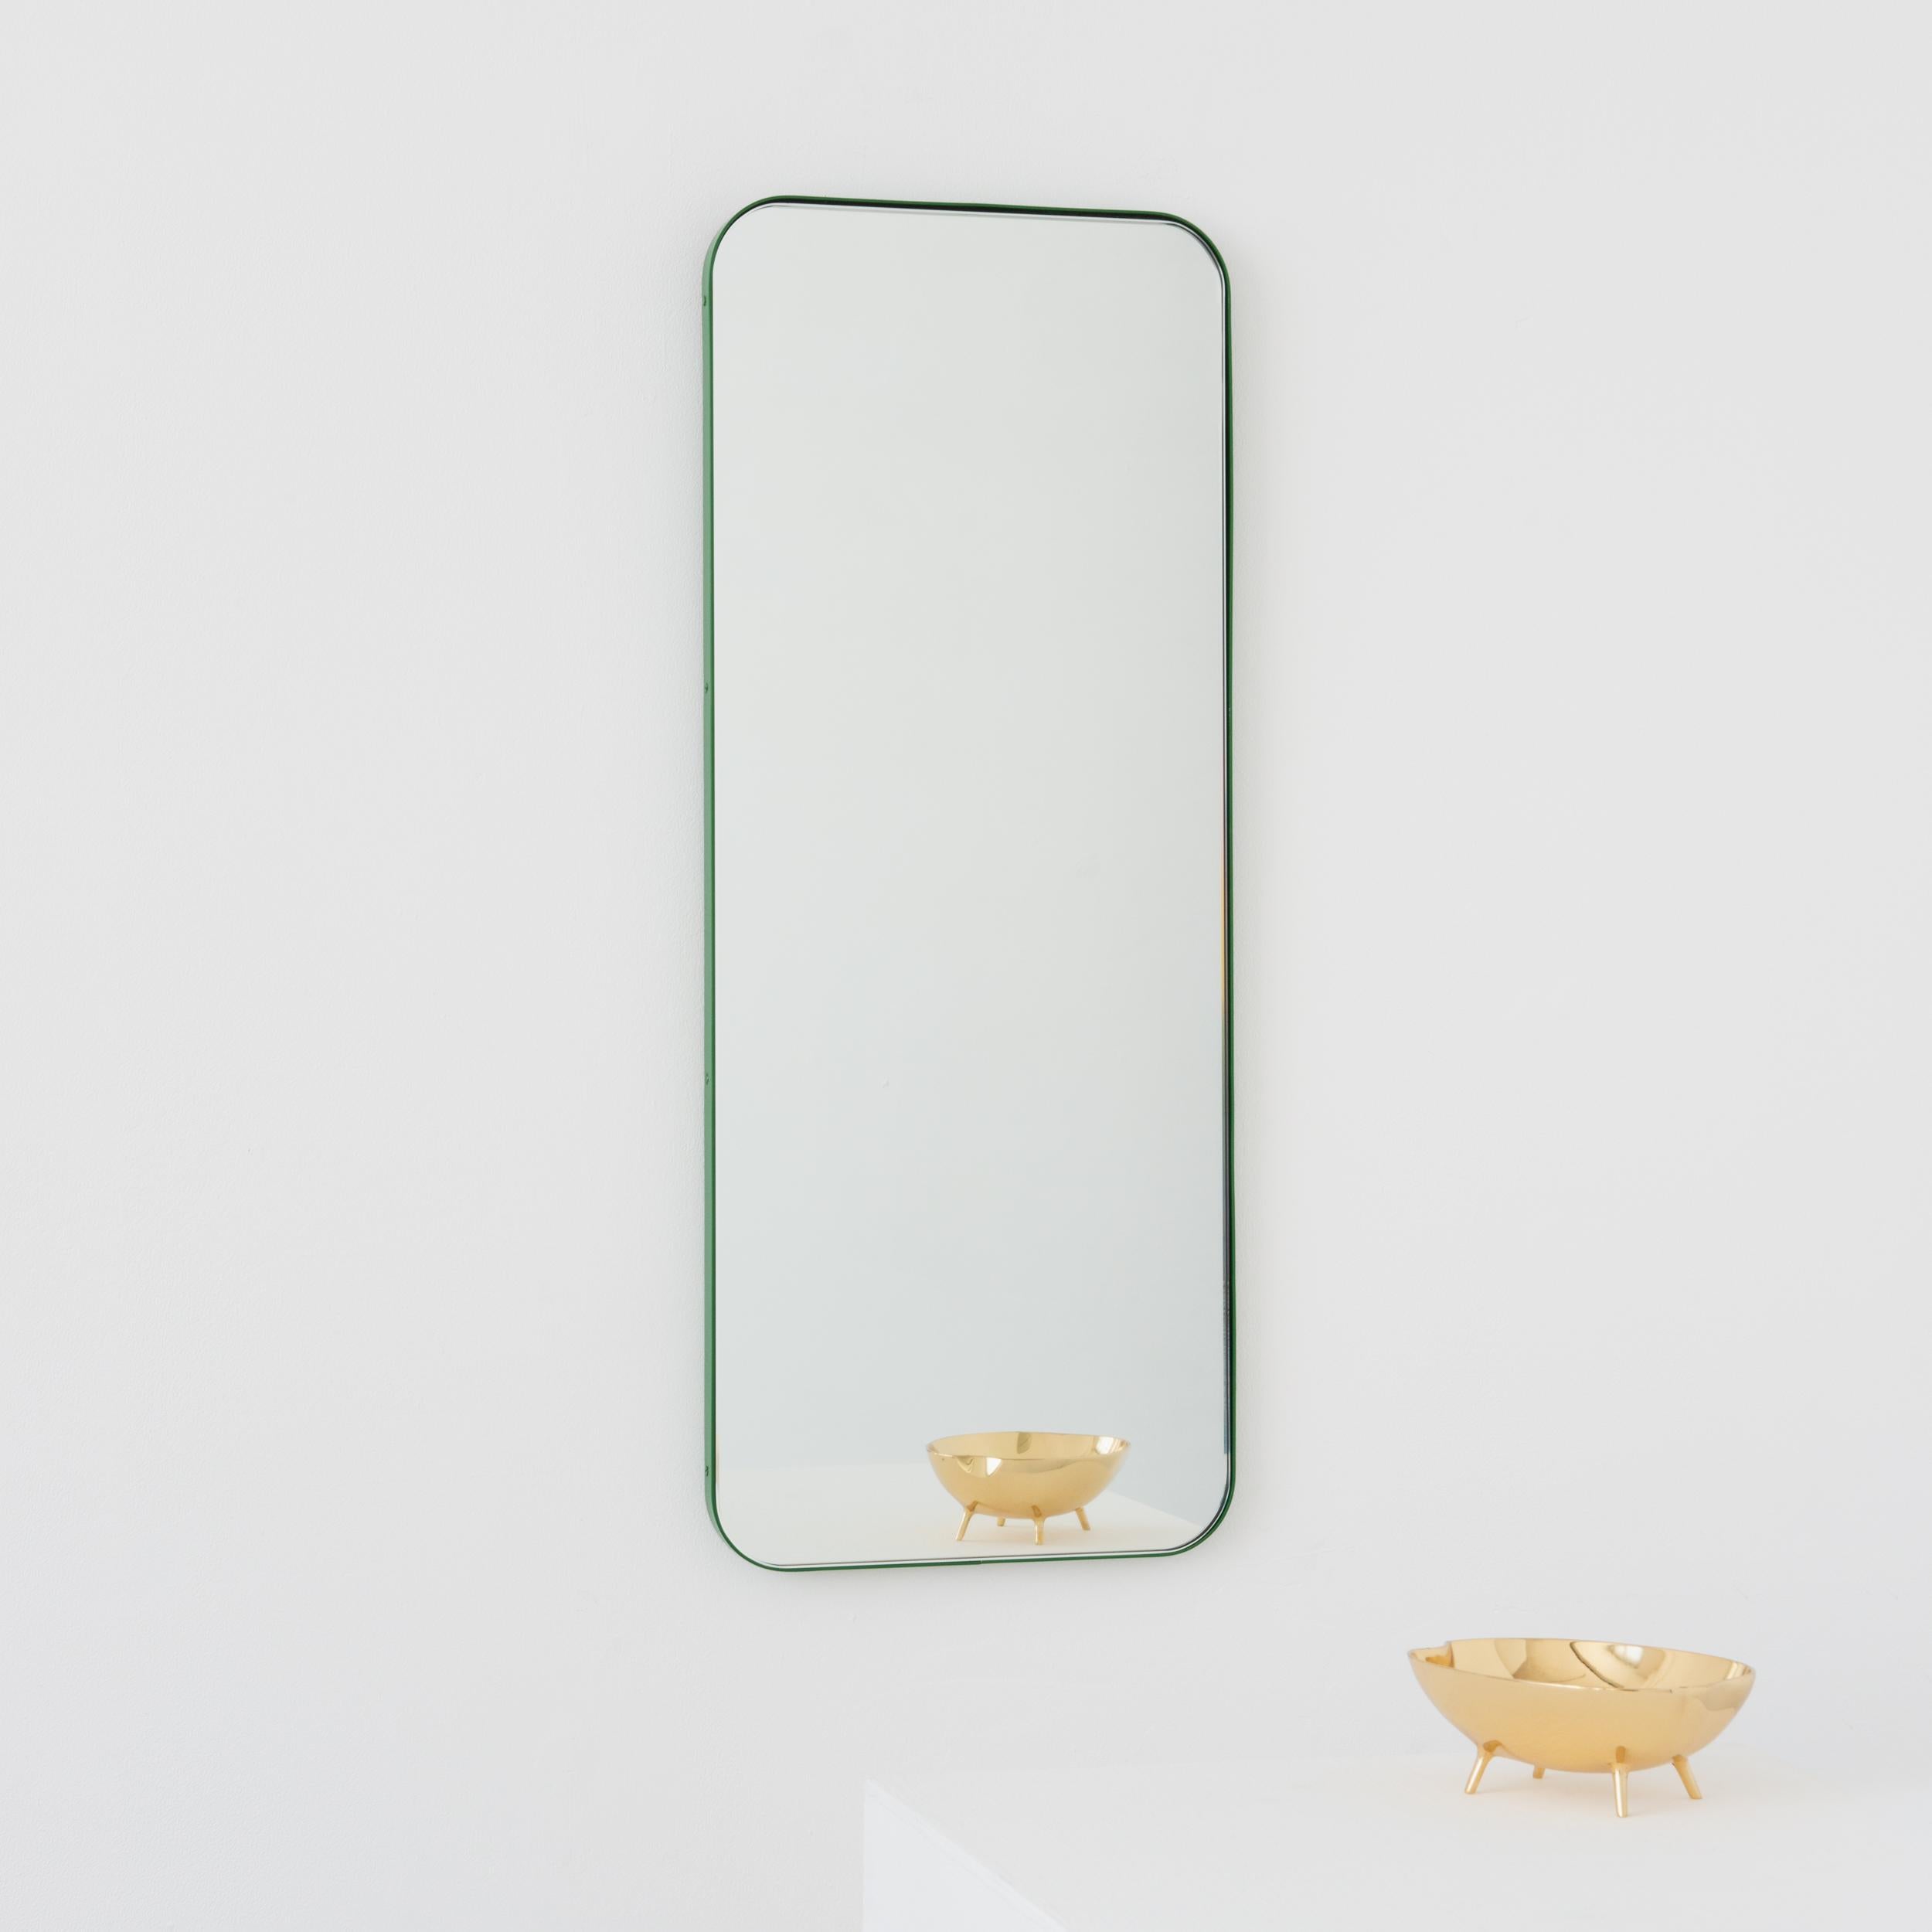 Miroir rectangulaire moderne avec un cadre vert élégant. Une partie de la charmante collection Quadris, conçue et fabriquée à la main à Londres, au Royaume-Uni. 

Fourni avec une barre en z spécialisée pour une installation facile. Un système